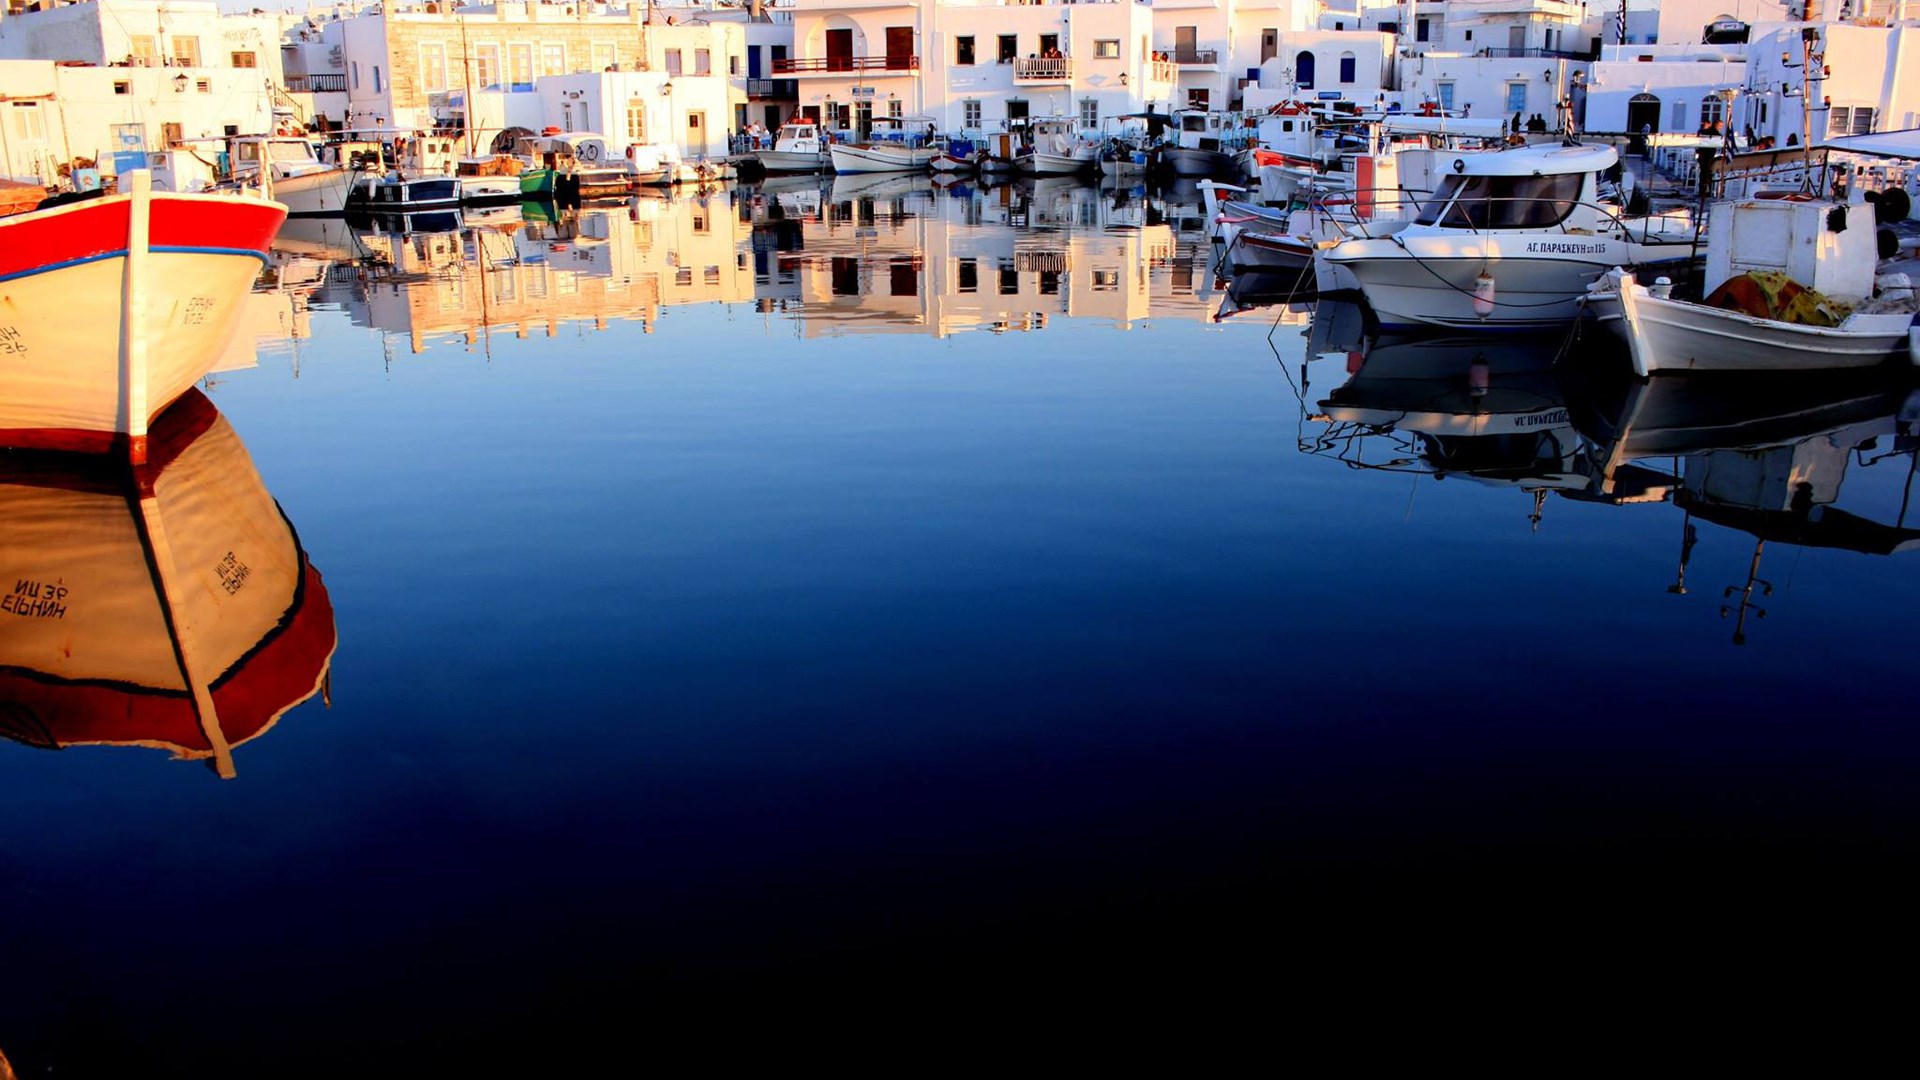 Naoussa, Paros - Cyclades Islands | 21 Aug 2014  | Alargo